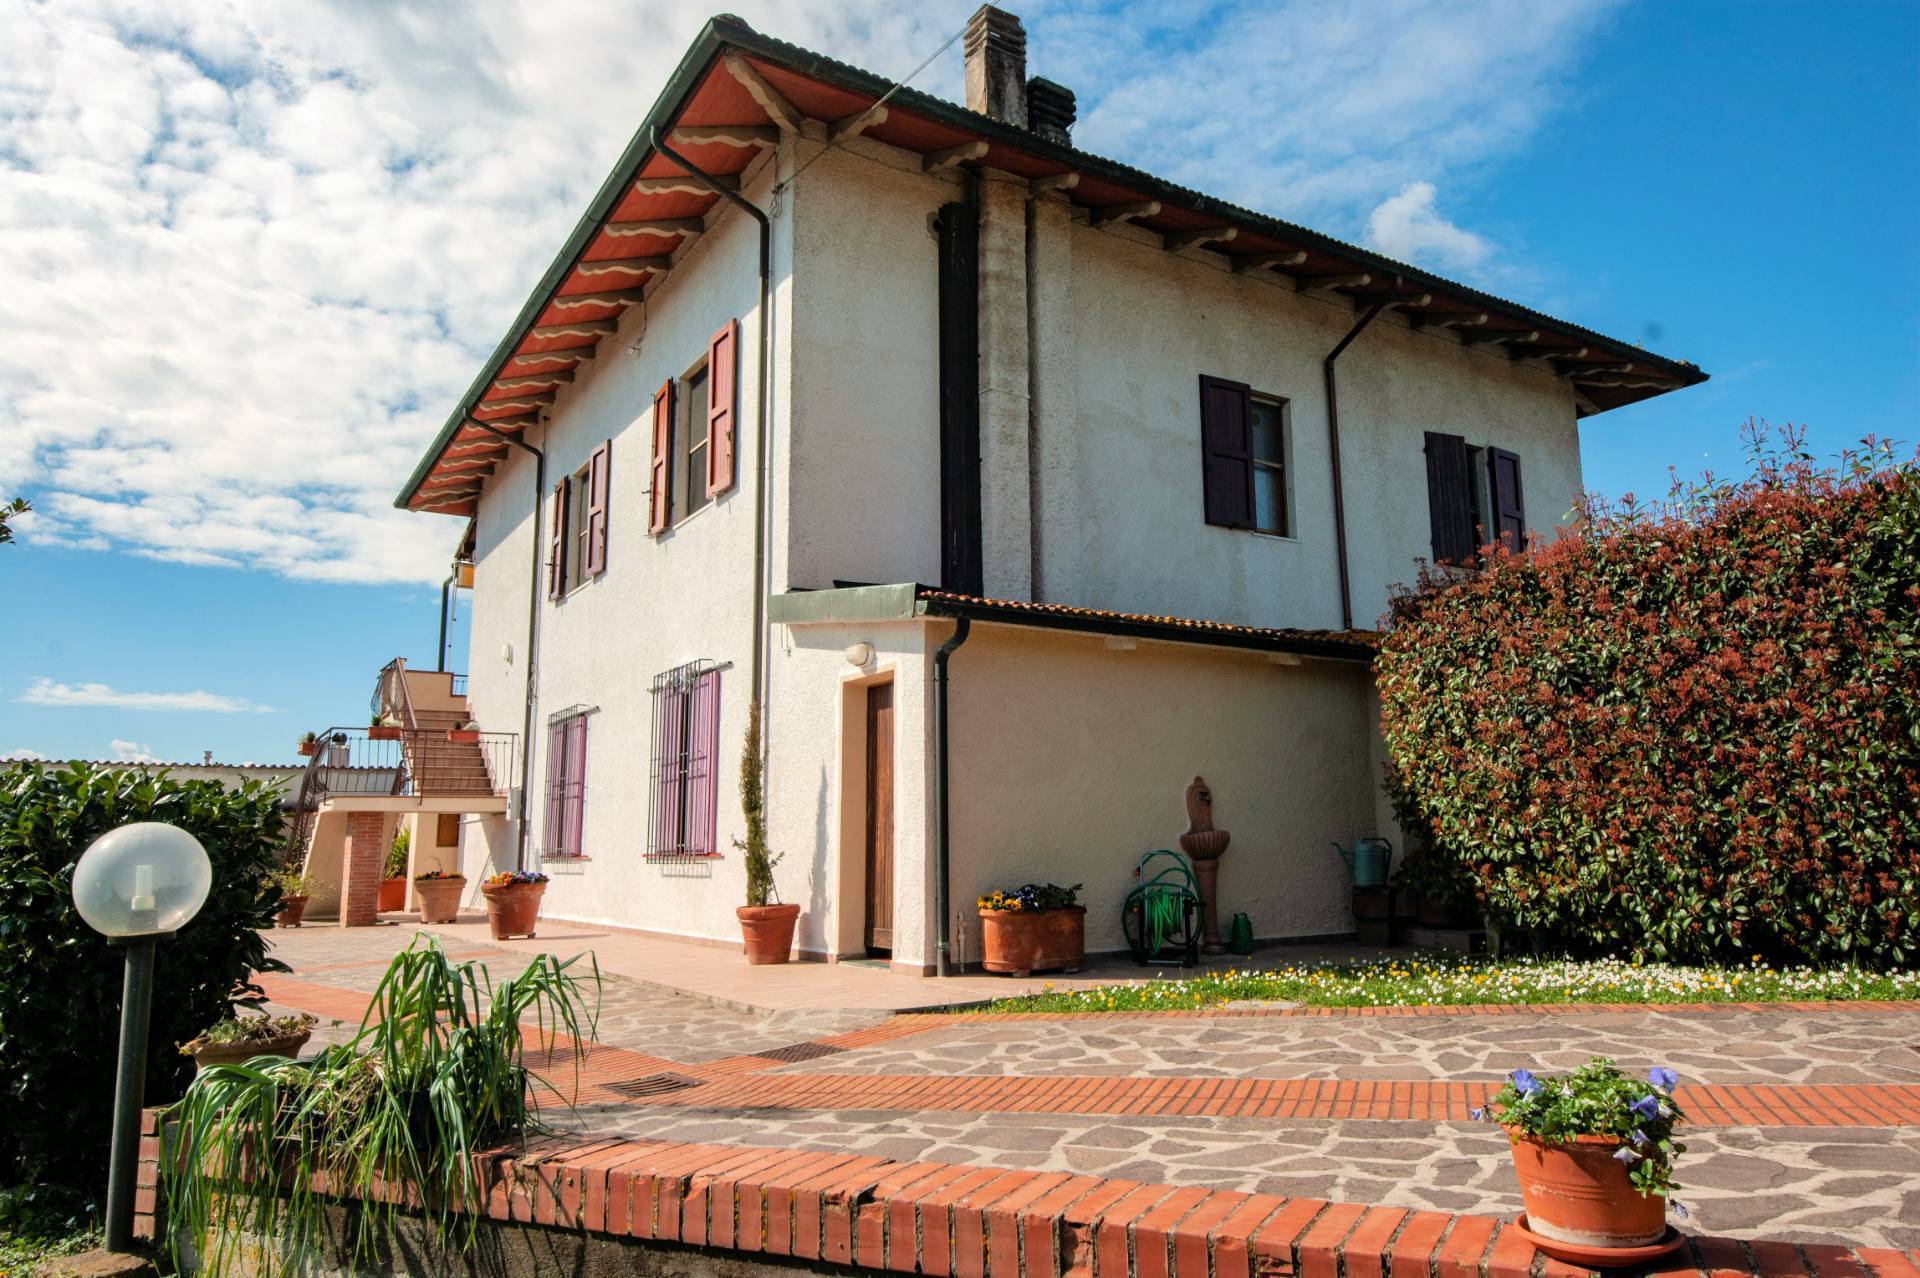 1328-Appartamento in bifamiliare con giardino privato e depemdance-Santa Maria a Monte-1 Agenzia Immobiliare ASIP